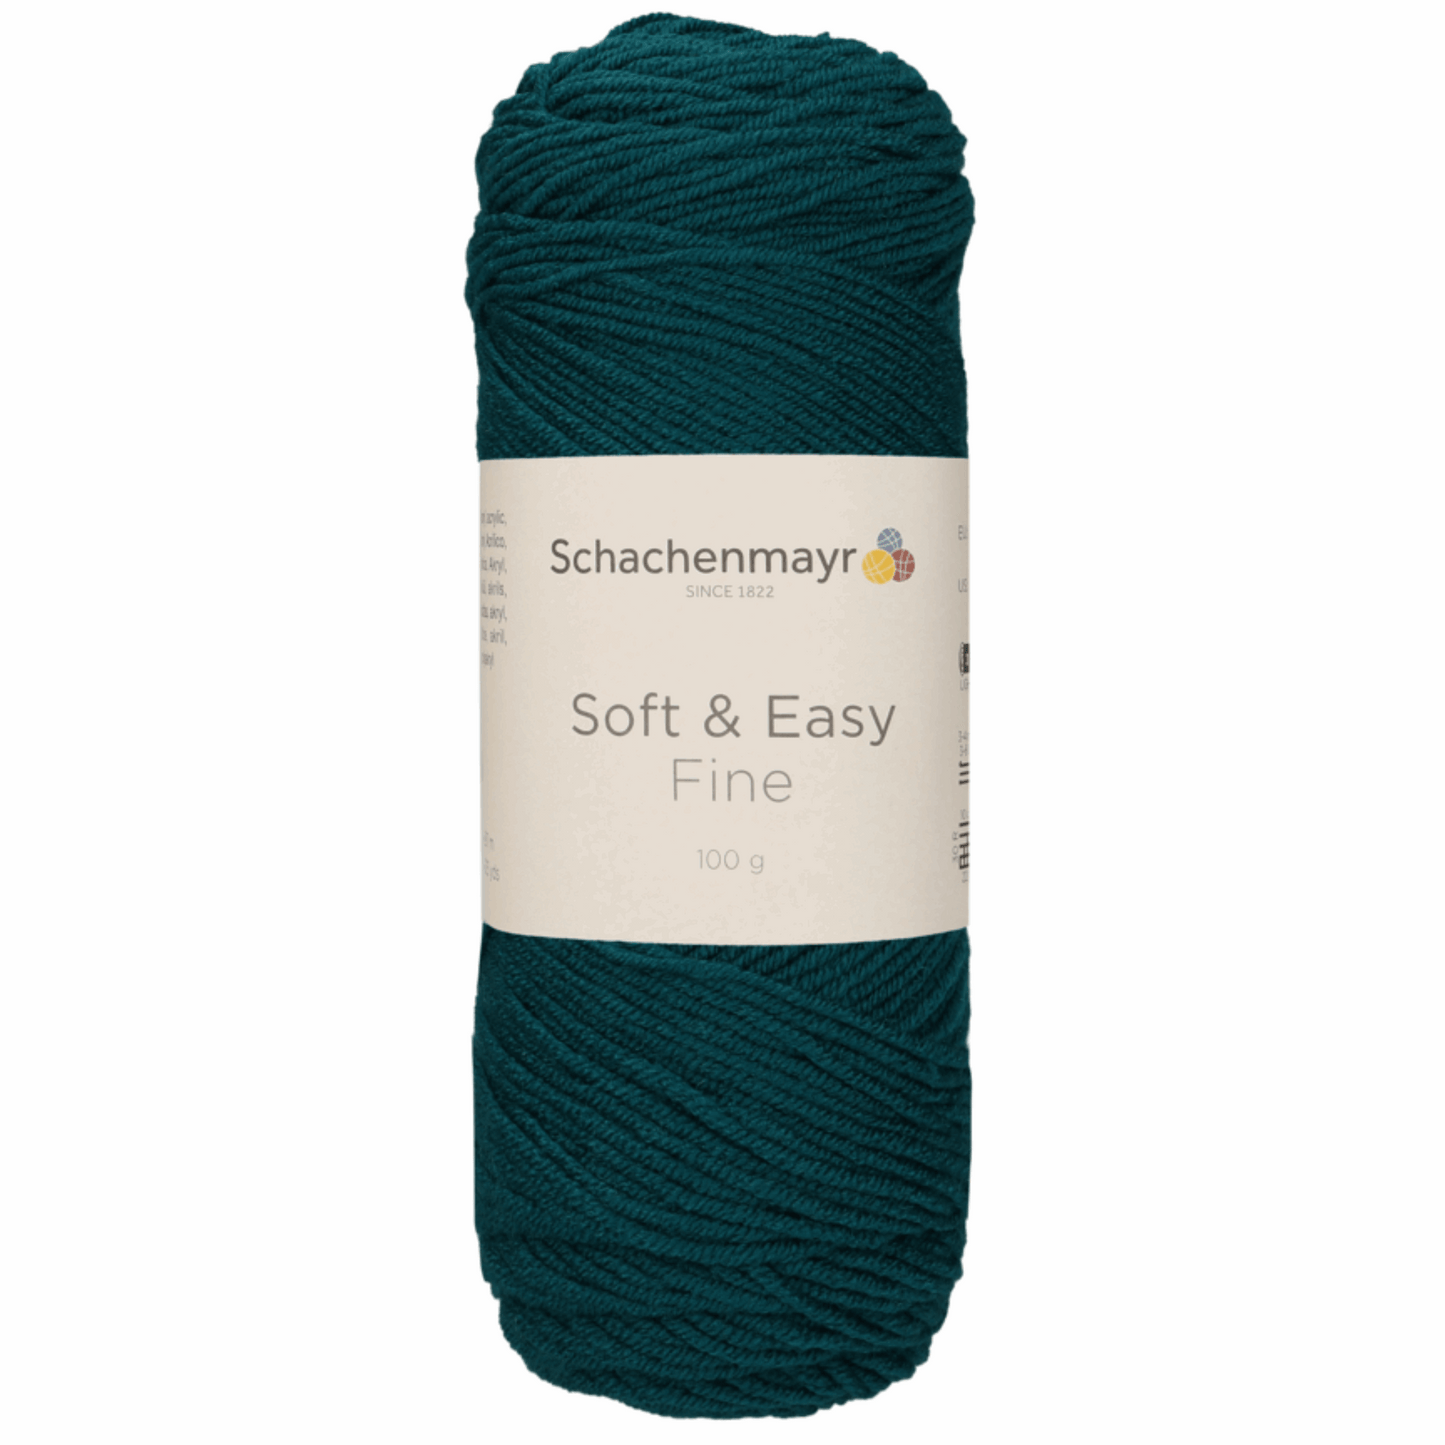 Schachenmayr Soft & Easy Fine 100g, 90402, Farbe Petrol 69